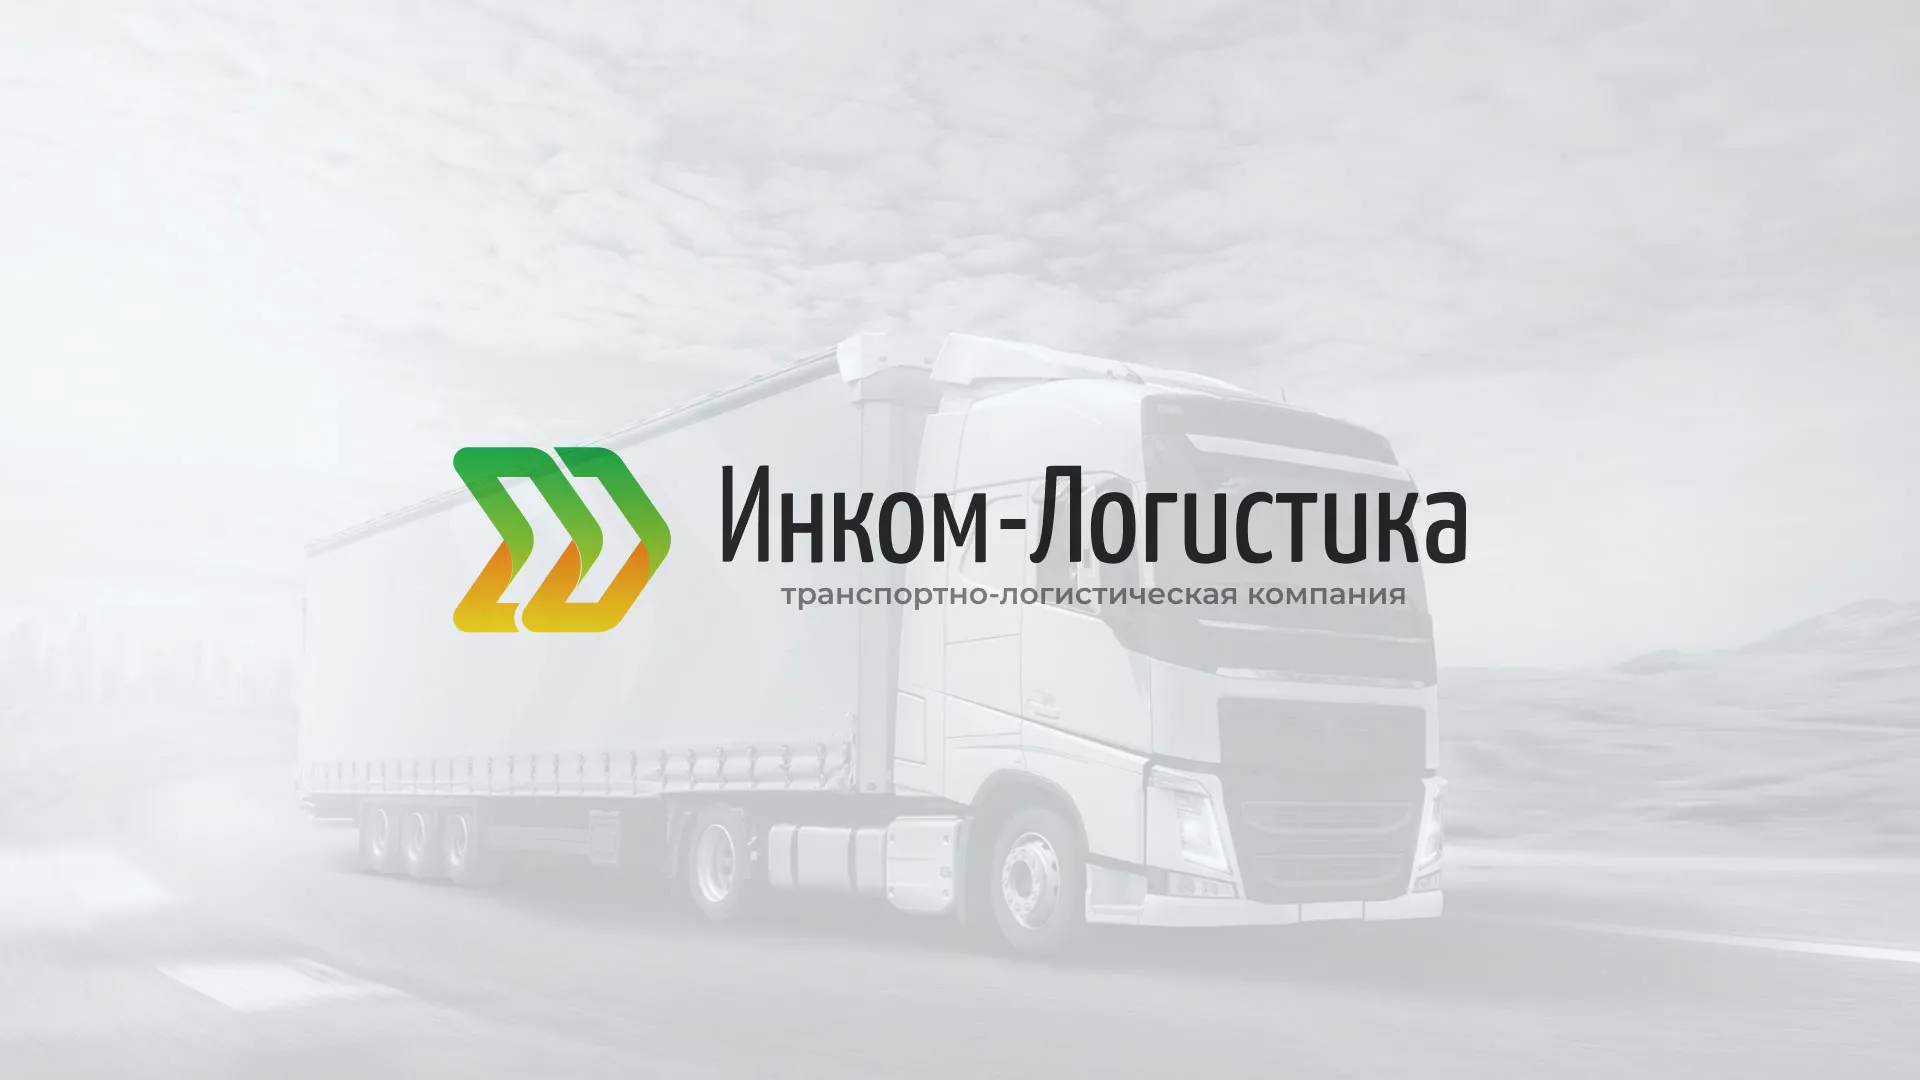 Разработка логотипа и сайта компании «Инком-Логистика» в Петропавловске-Камчатском